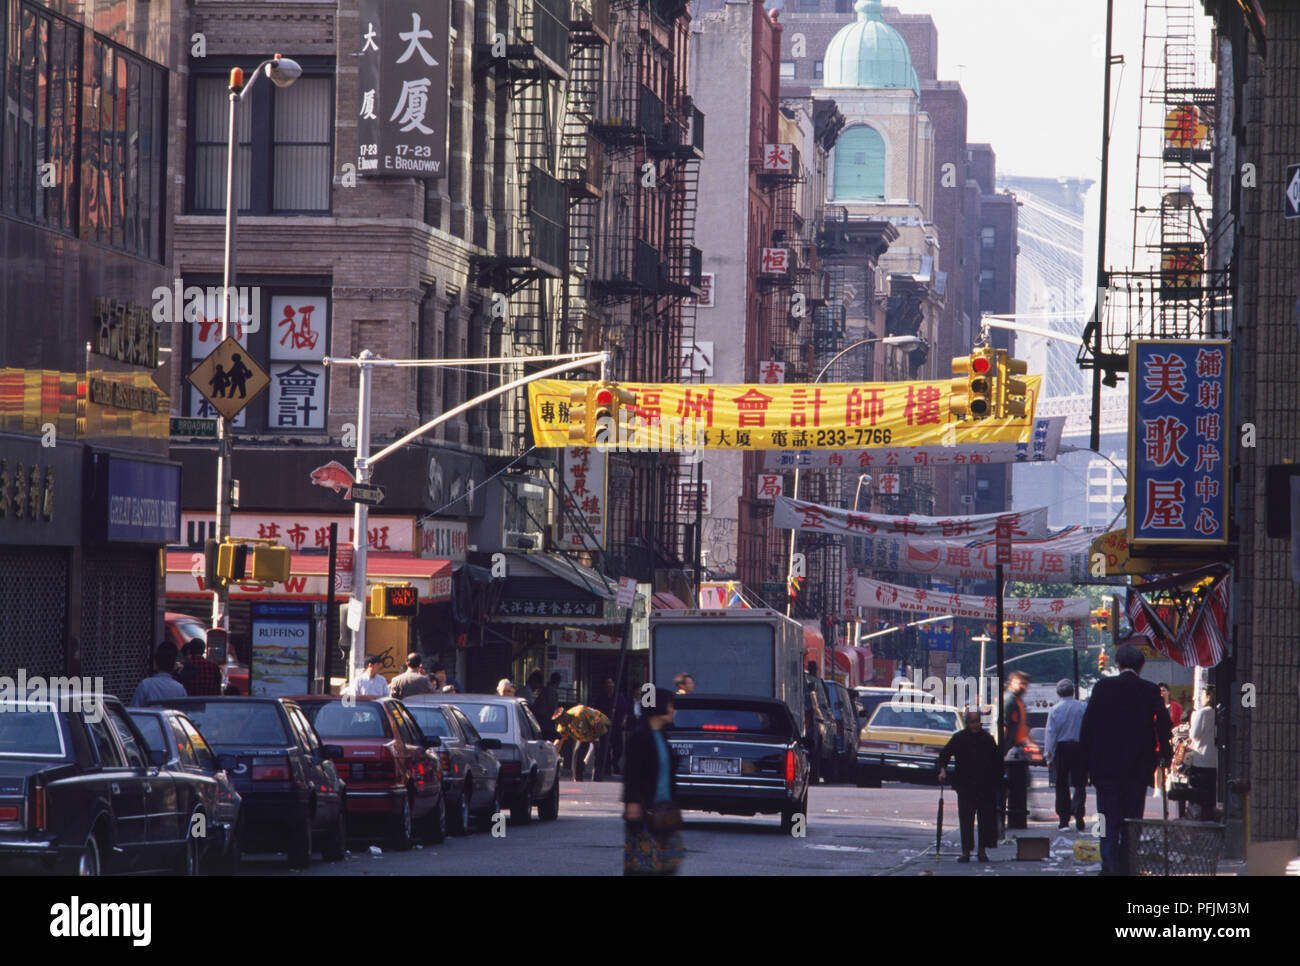 Stati Uniti d'America, New York, Manhattan Lower East Side, Chinatown, la scena di strada con il ponte di Brooklyn in background. Foto Stock